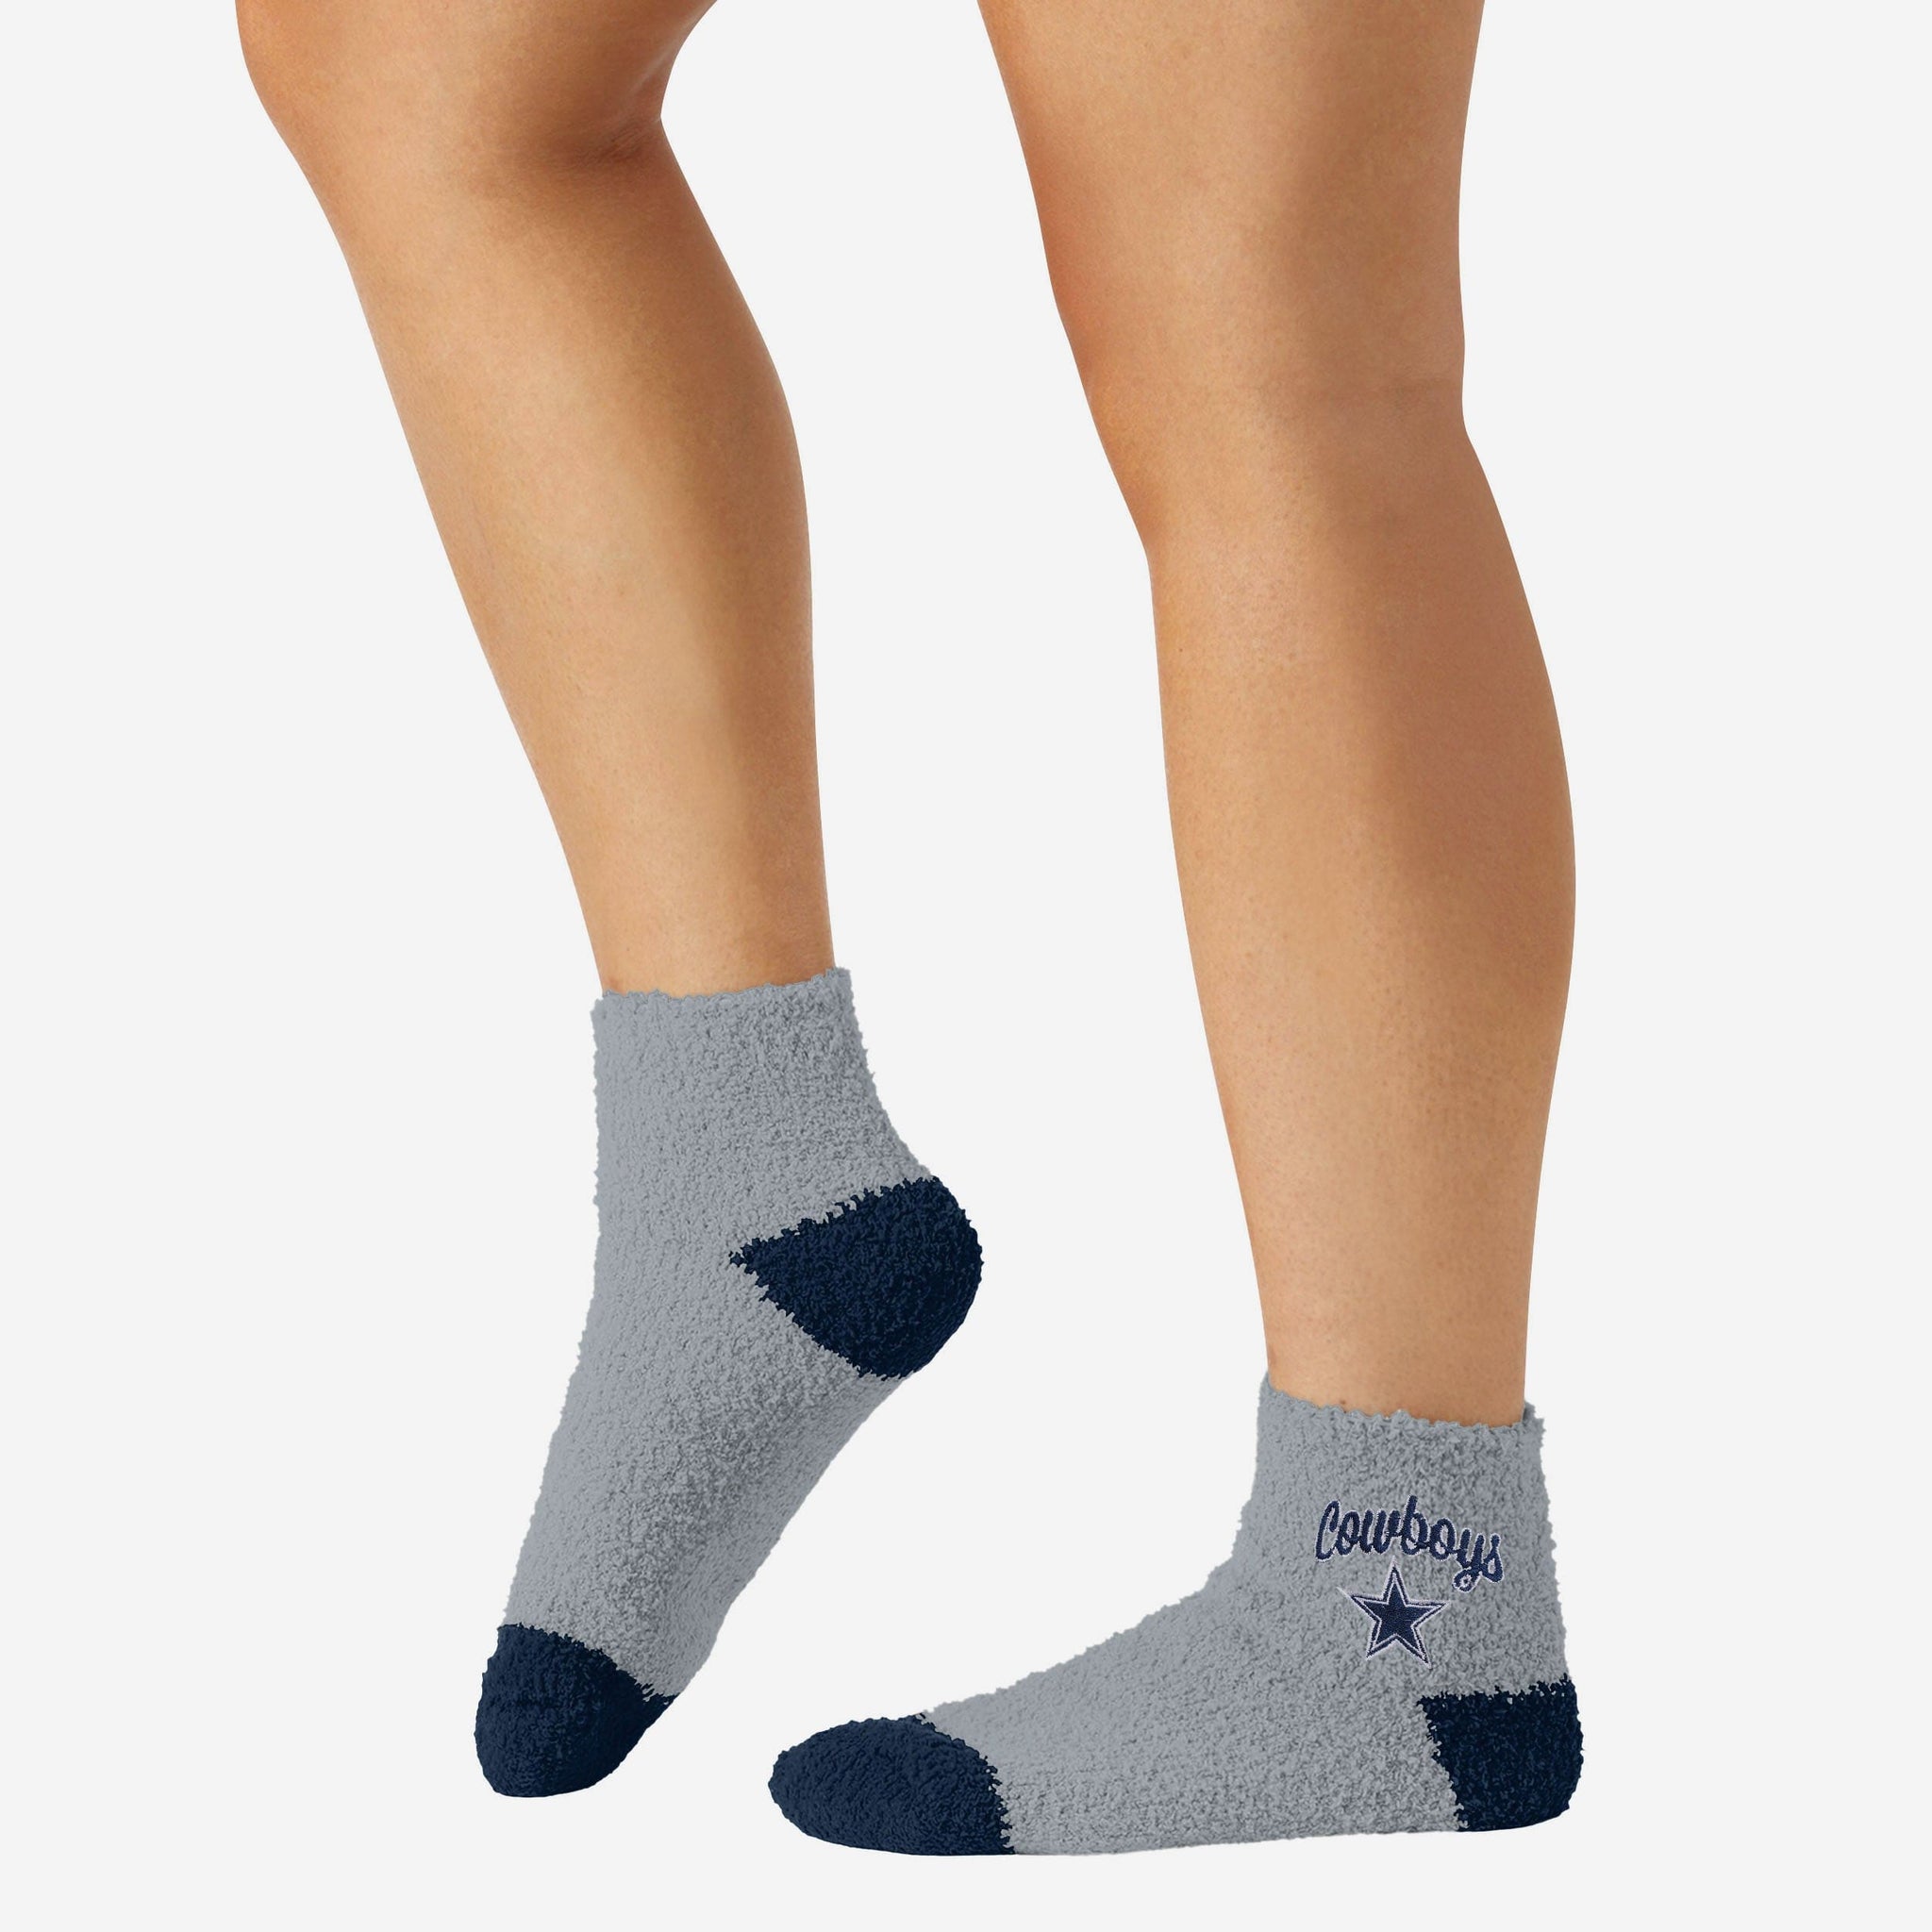 louisville kids socks